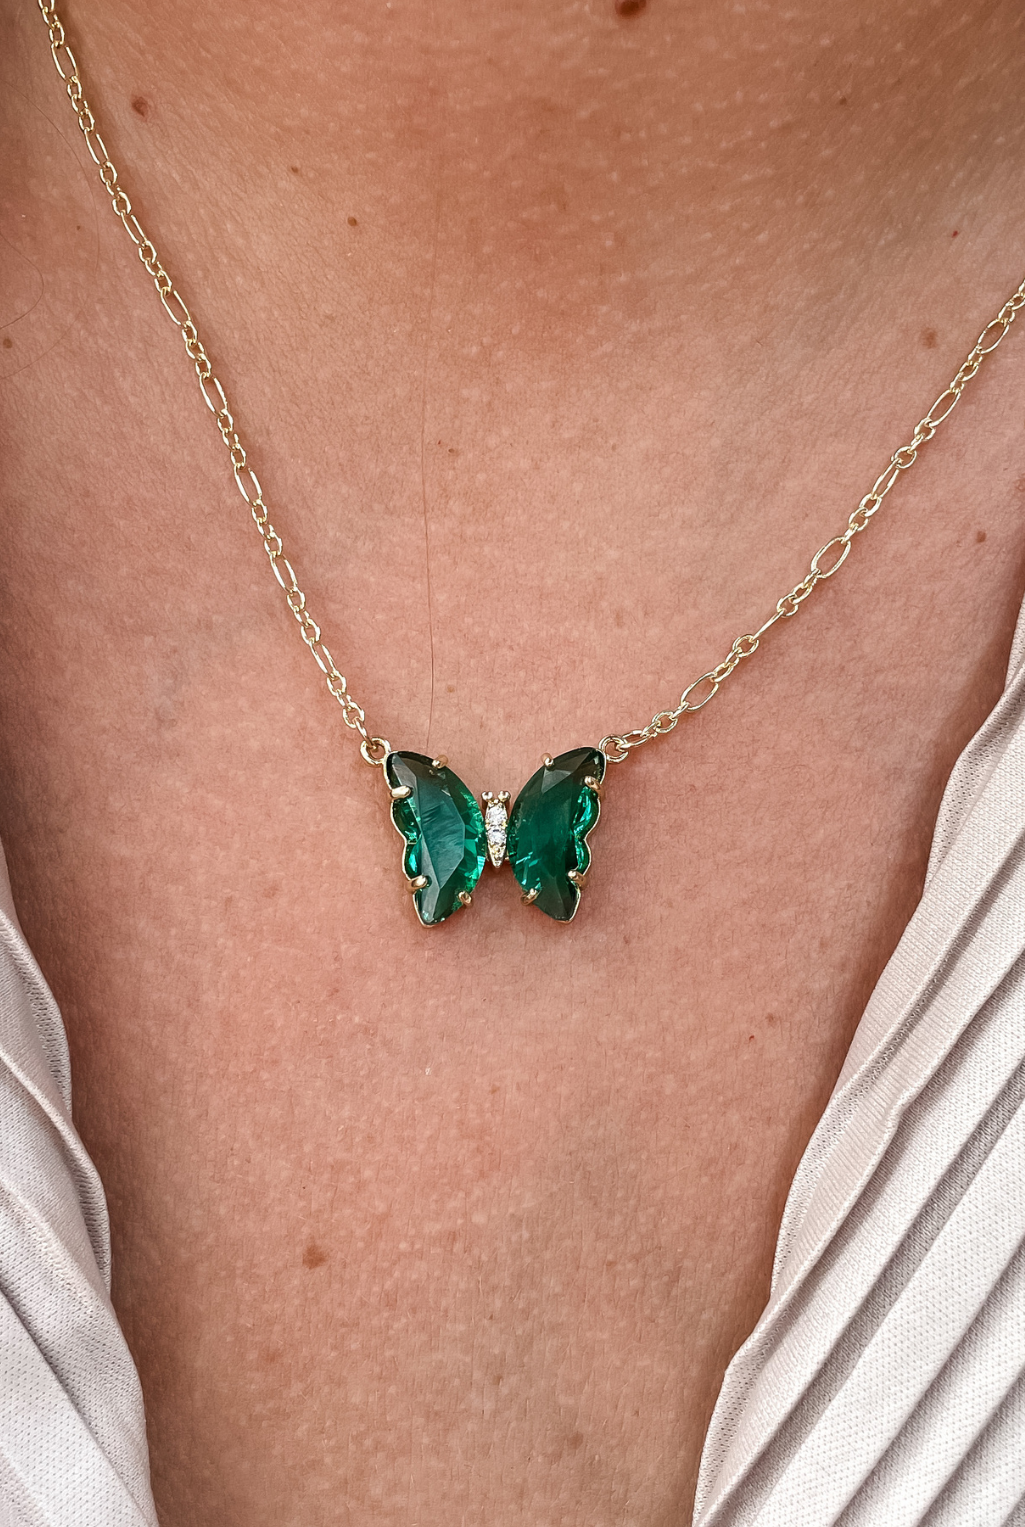 Flighty Butterfly Necklace - Green